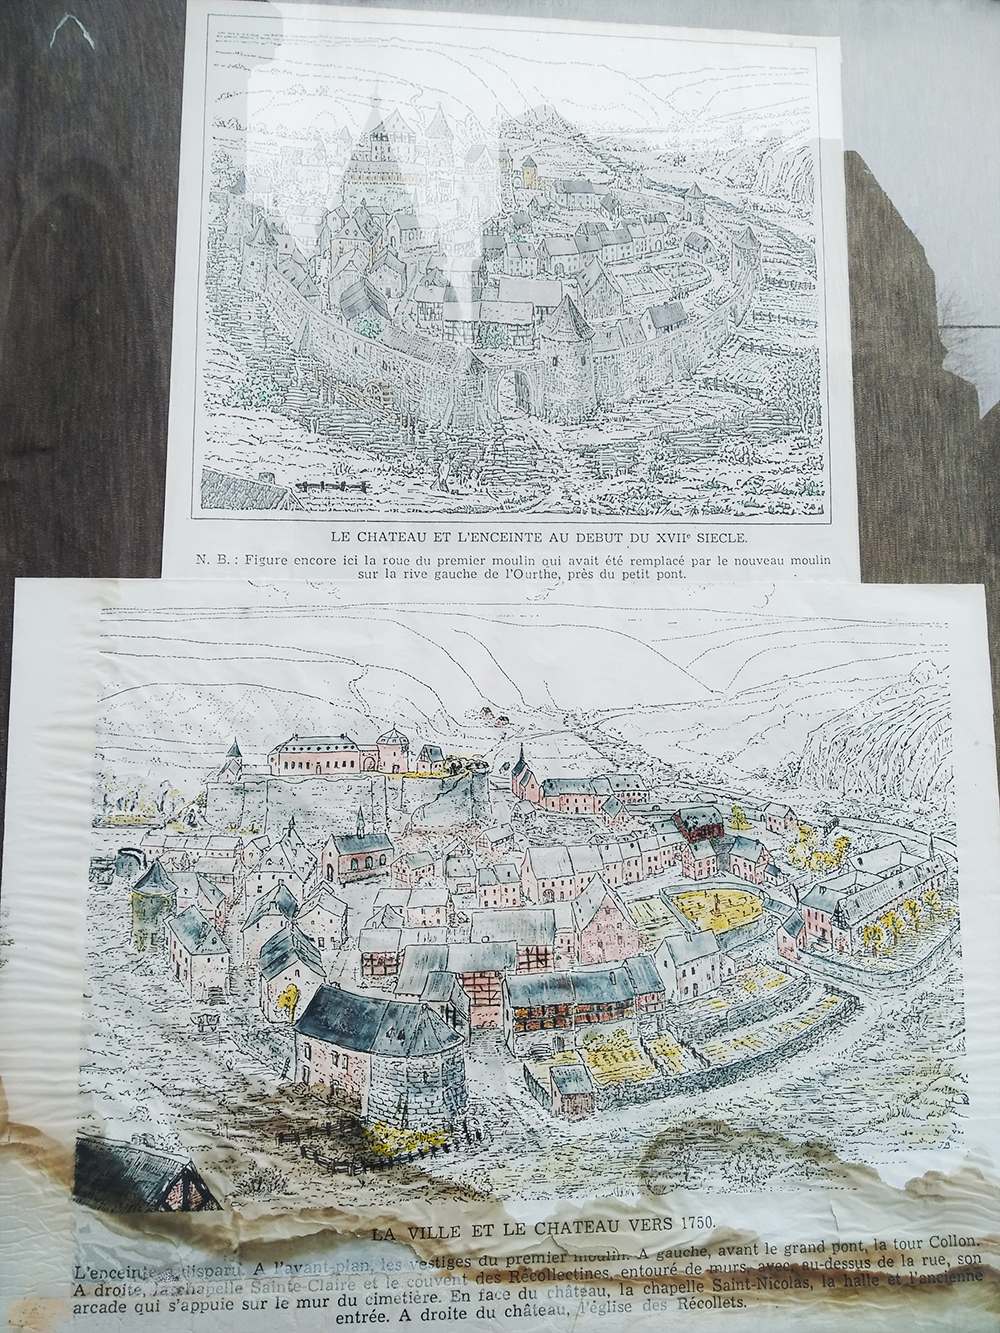 Эта карта висит в туристическом инфоцентре. Верхняя иллюстрирует, как город выглядел в 17 веке, а нижняя показывает планировку 1750 года